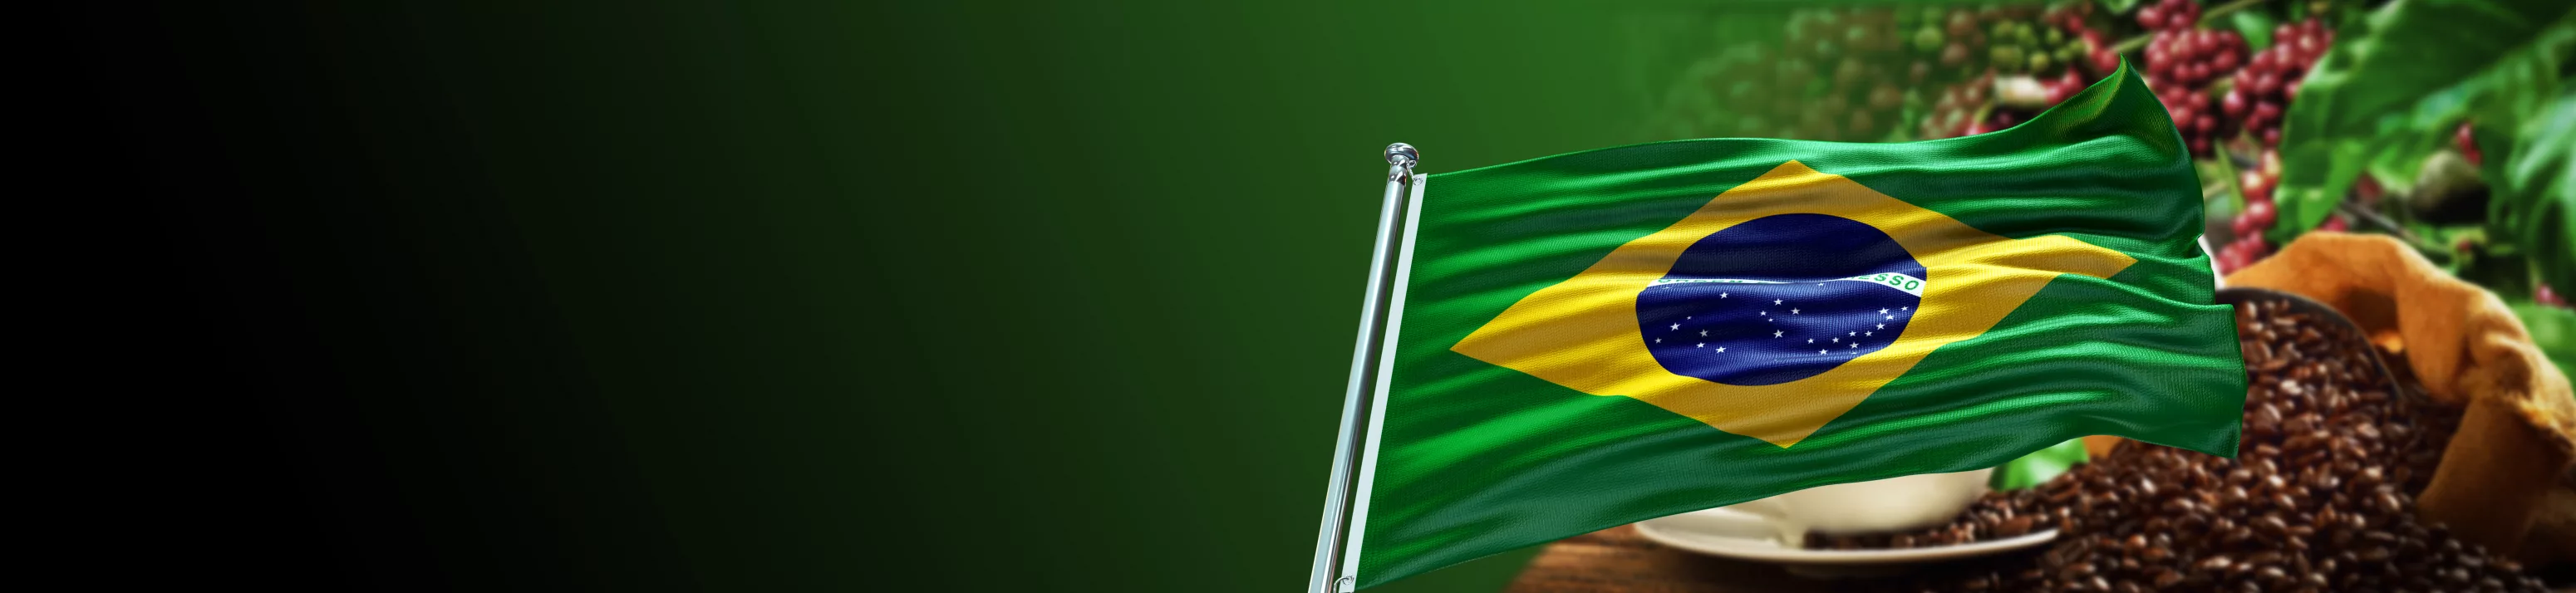 Valorização da cultura brasileira - Famatel Blog